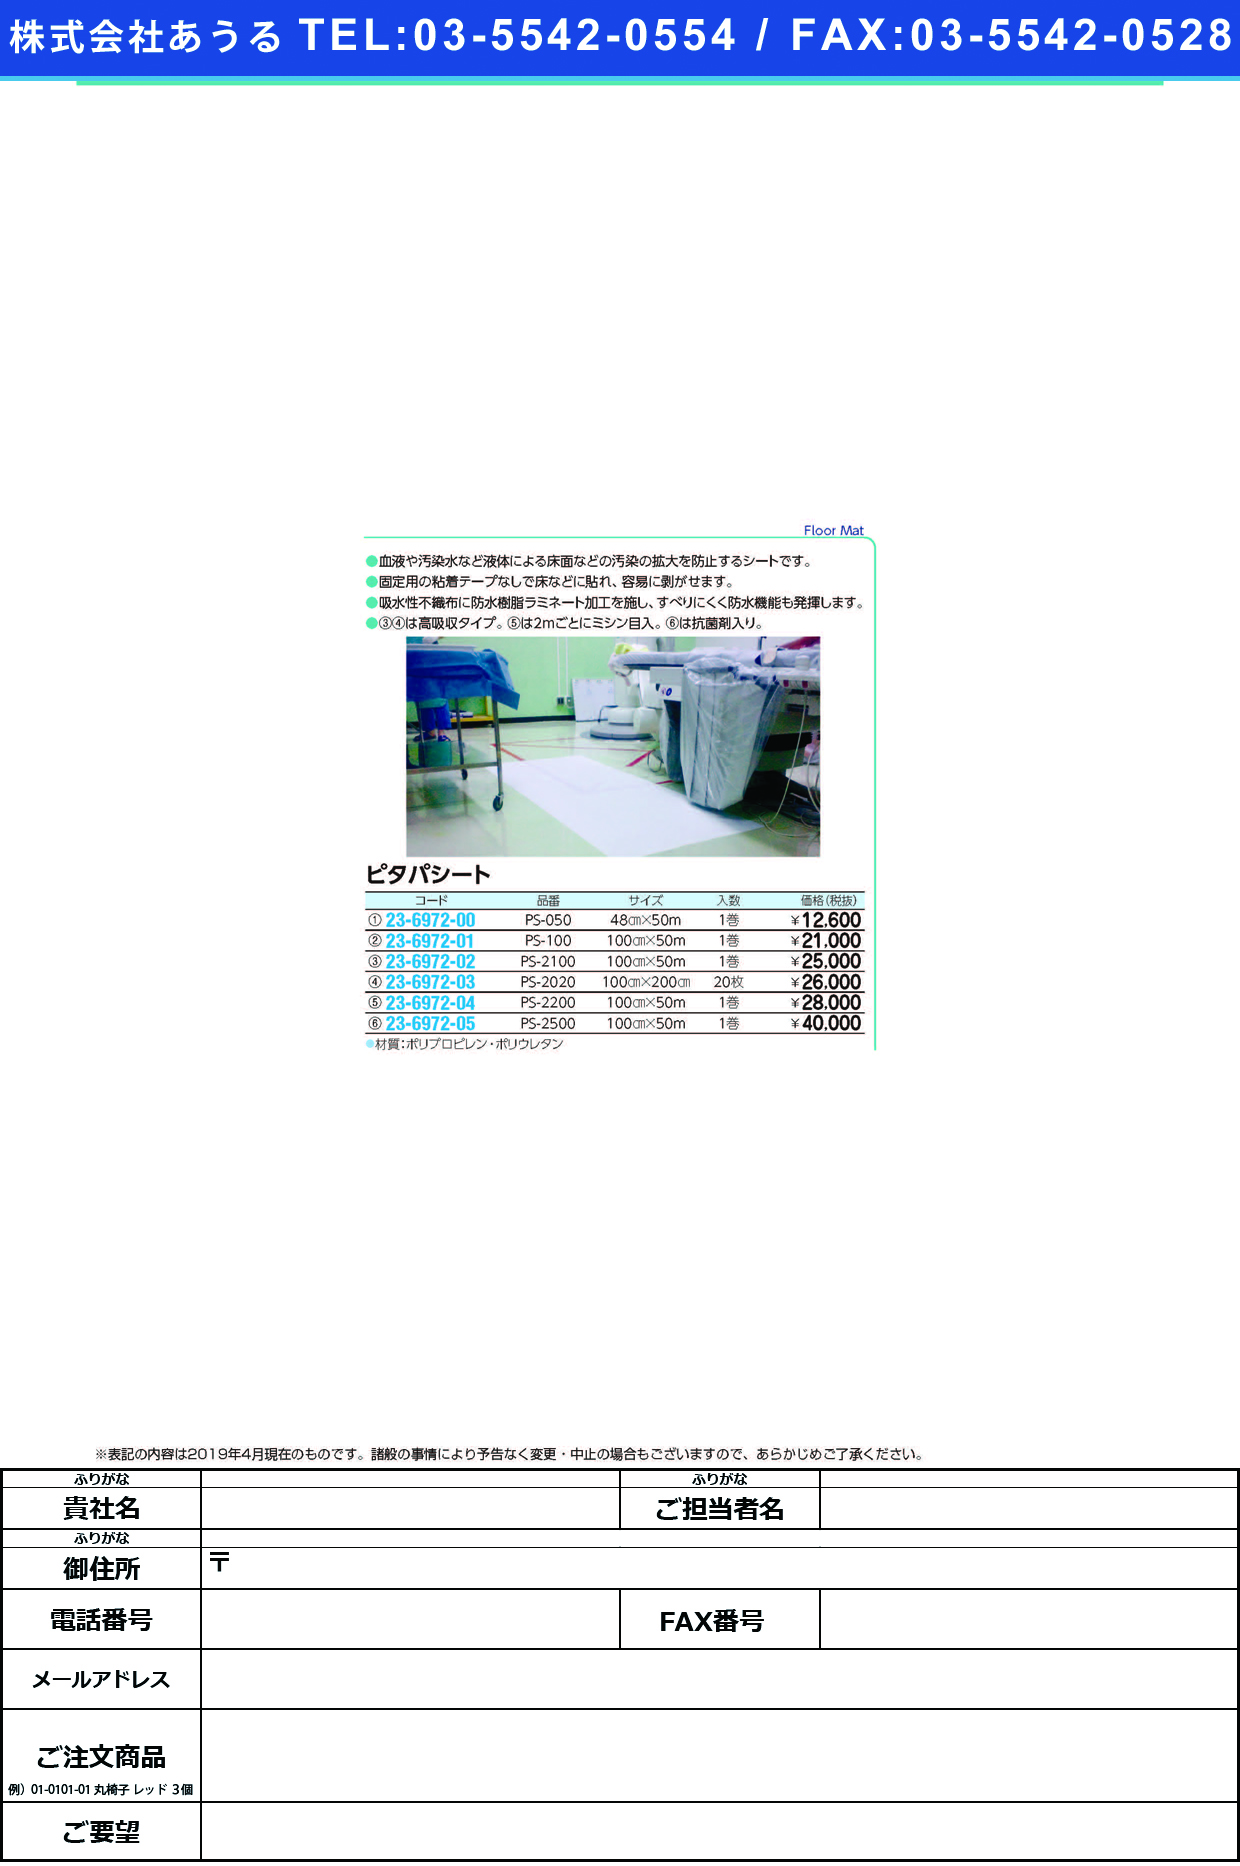 (23-6972-02)ピタパシート PS-2100(100CMX50M) ﾋﾟﾀﾊﾟｼｰﾄ(バイリーンクリエイト)【1巻単位】【2019年カタログ商品】